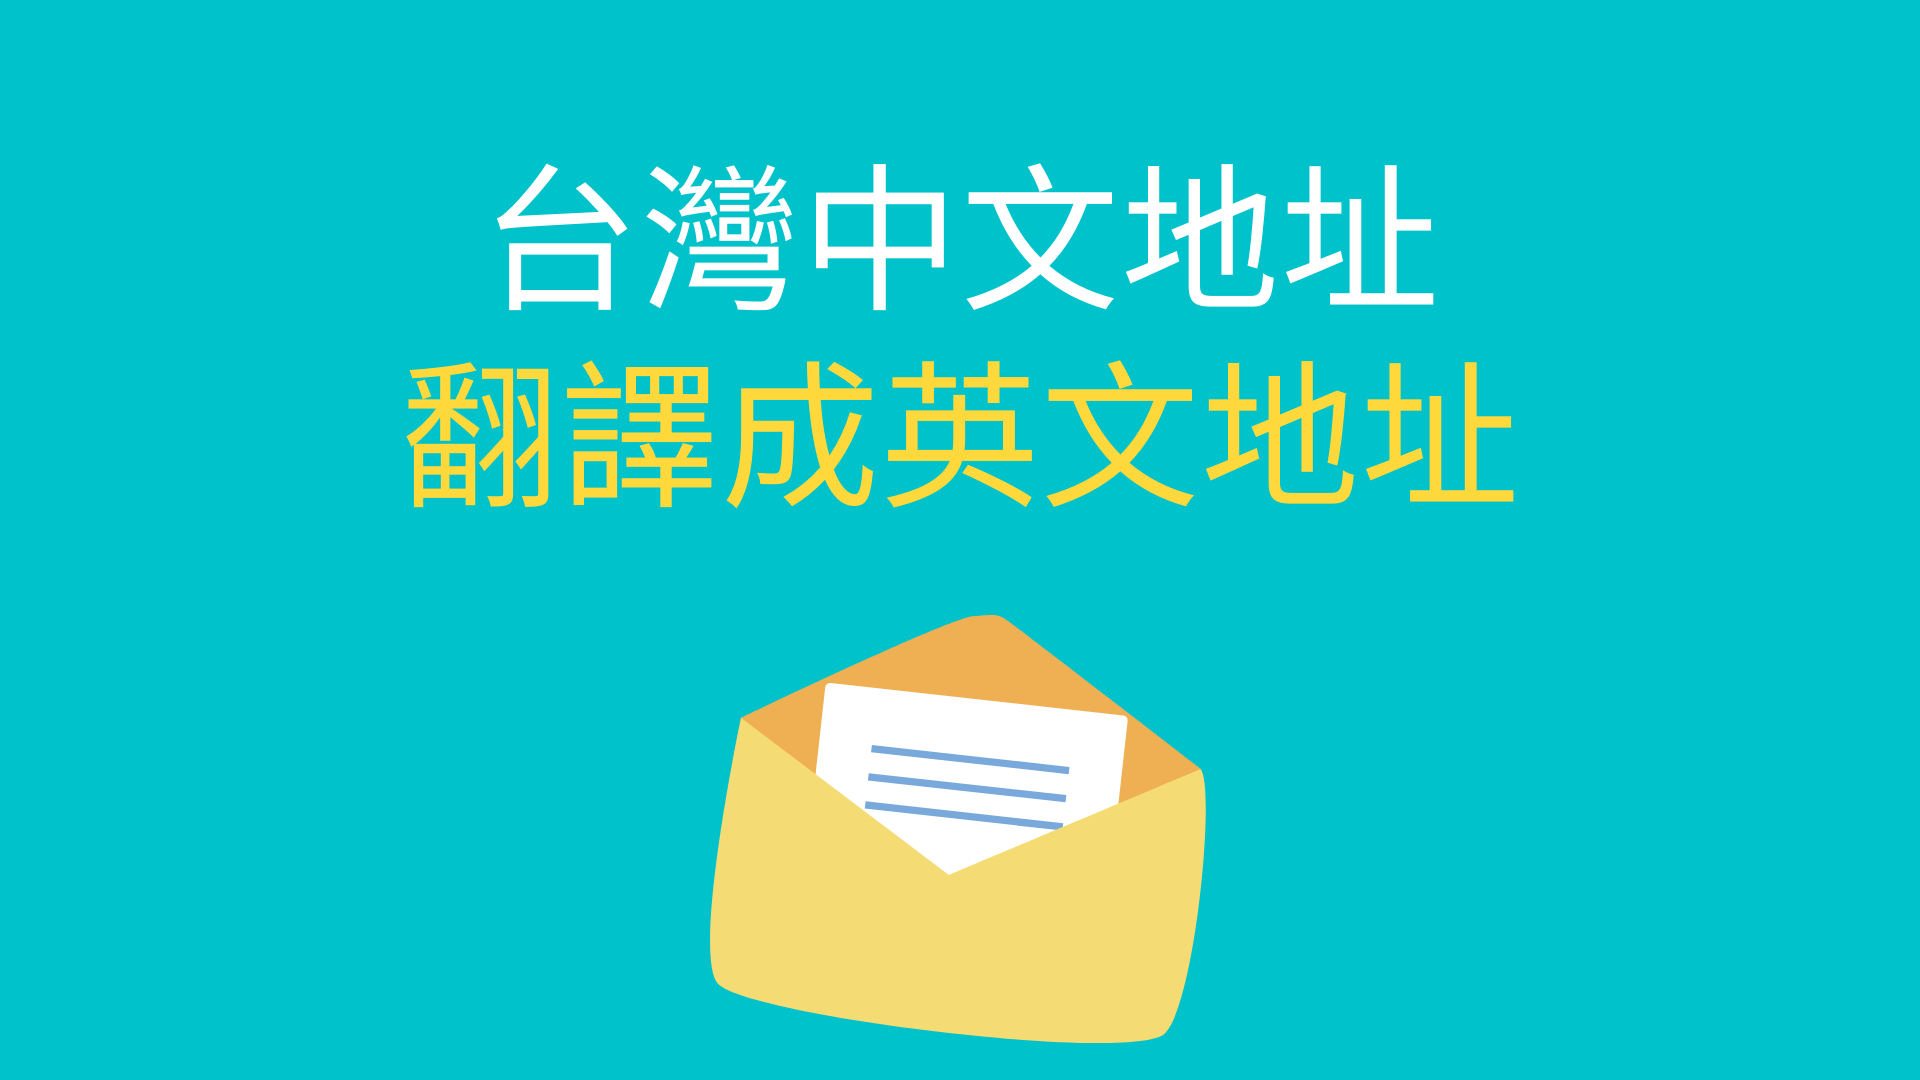 英文地址 台灣的中文 地址 英文怎麼翻譯 英譯 寫法查詢 全民學英文